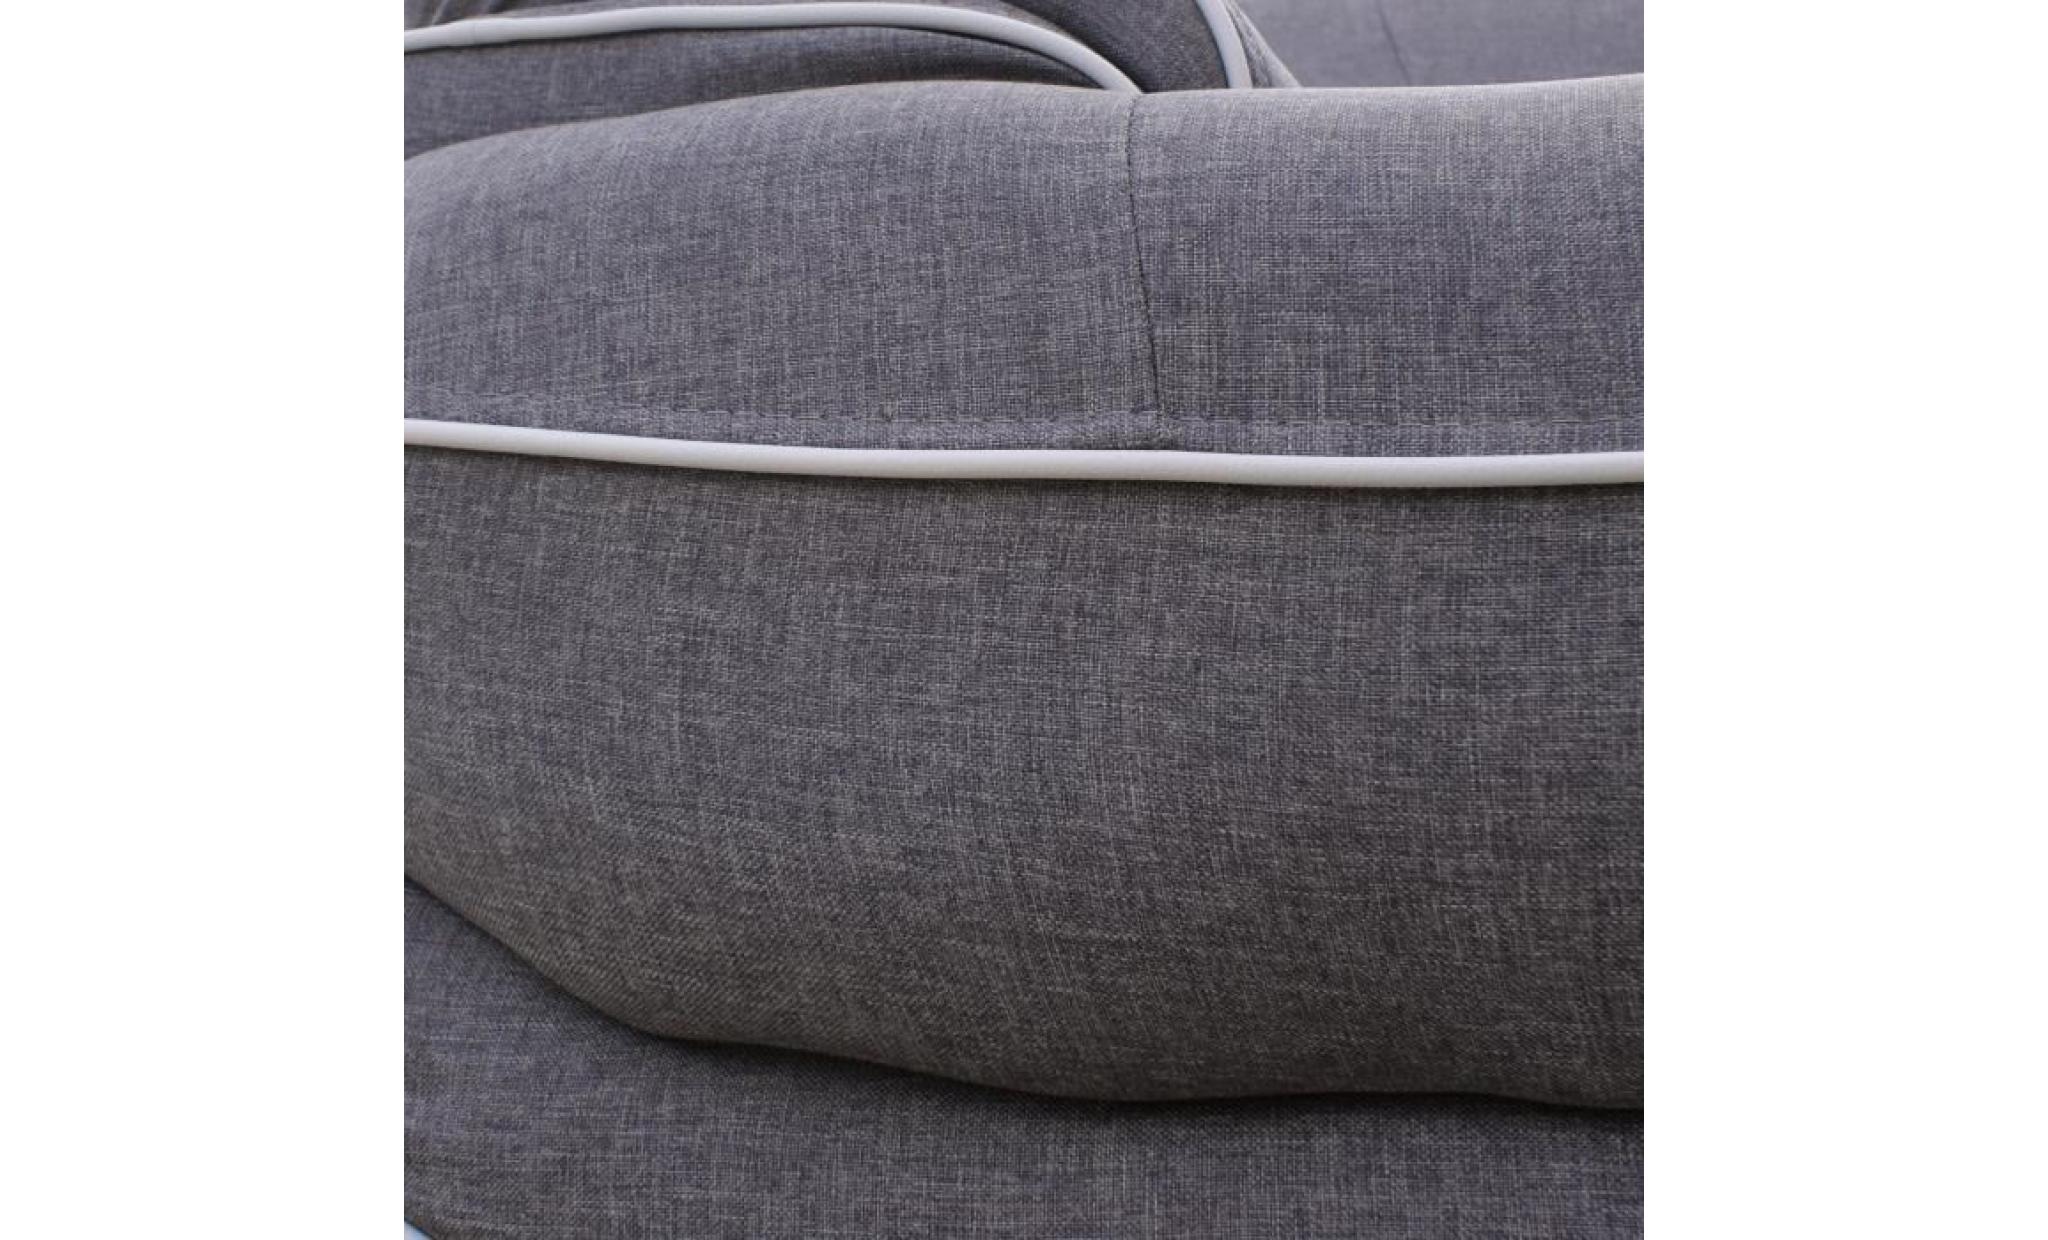 spacio fauteuil   tissu gris   contemporain   l 134 x p 86 cm pas cher